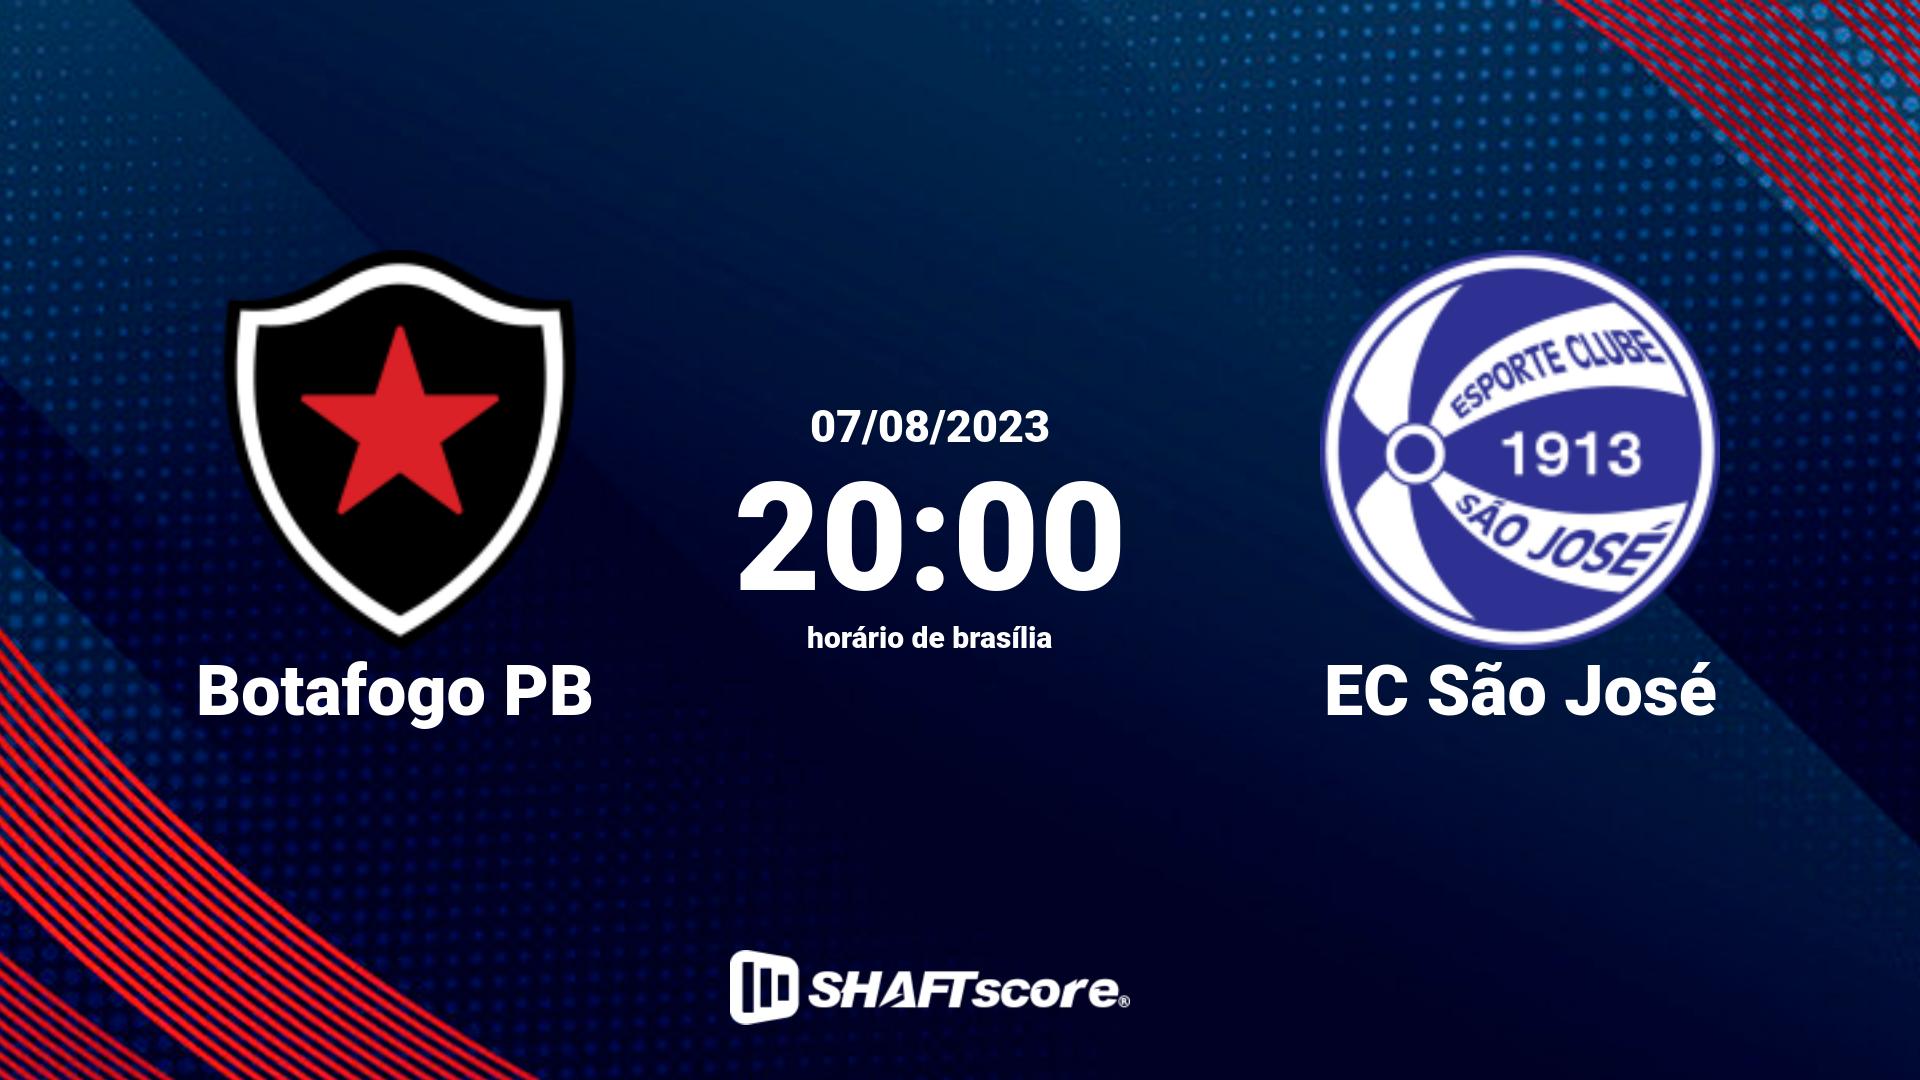 Estatísticas do jogo Botafogo PB vs EC São José 07.08 20:00